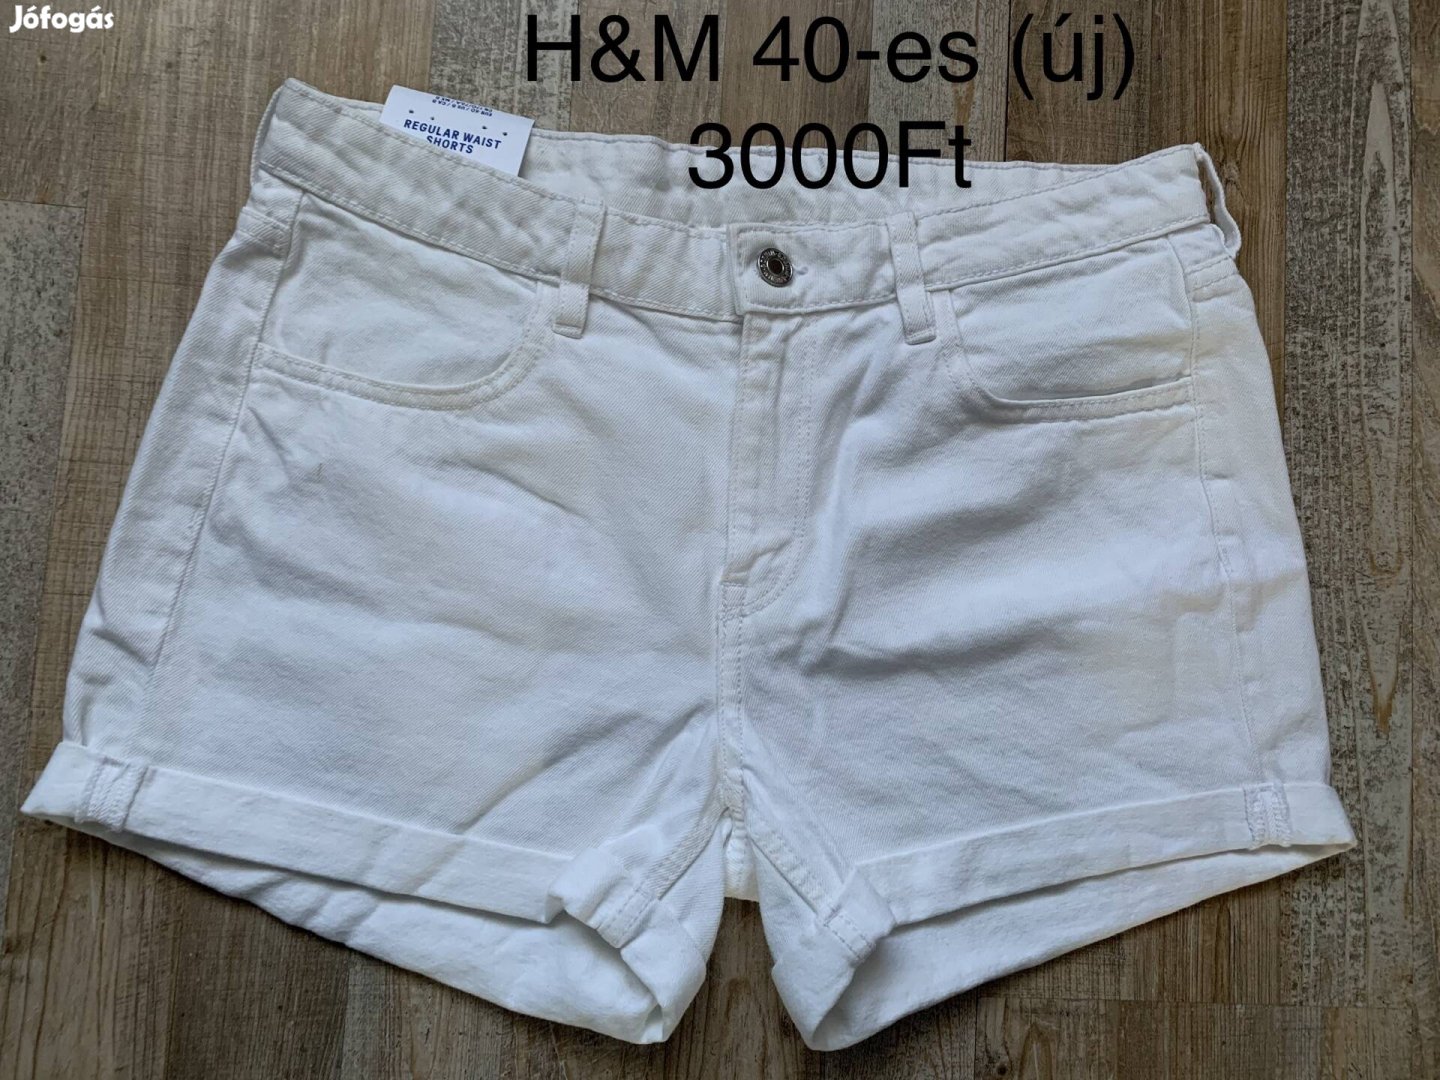 H&M 40-es fehér rövidnadrág